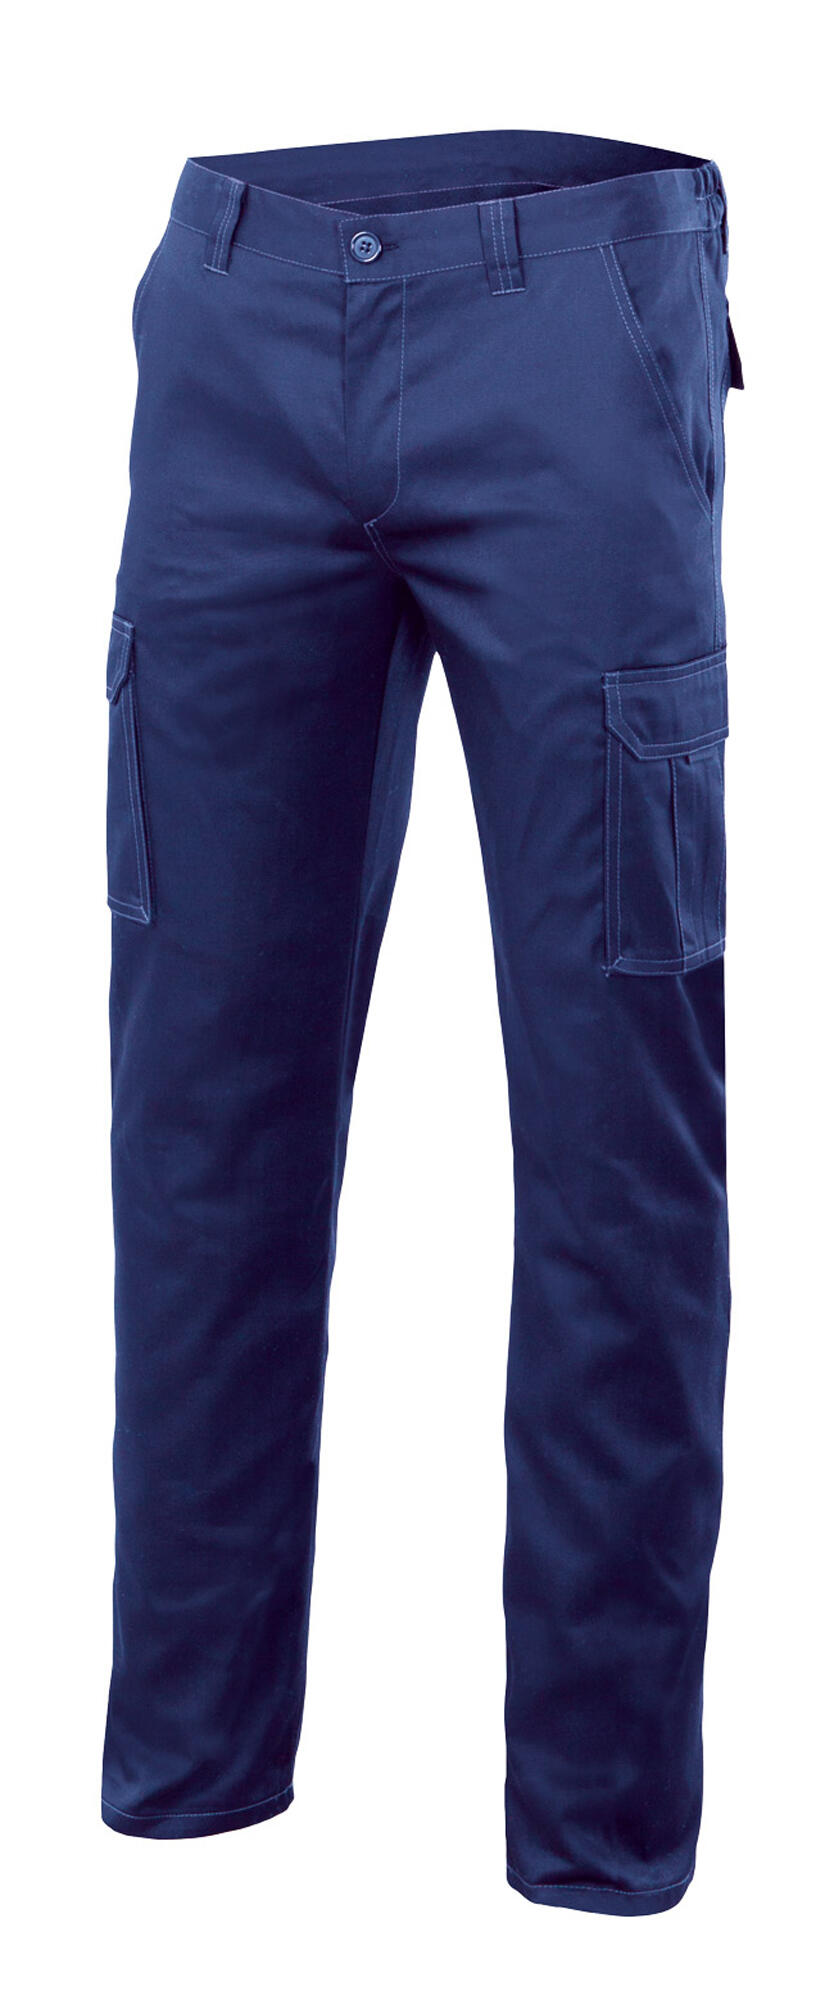 Pantalon de trabajo multibolsillo stretch azulina t54